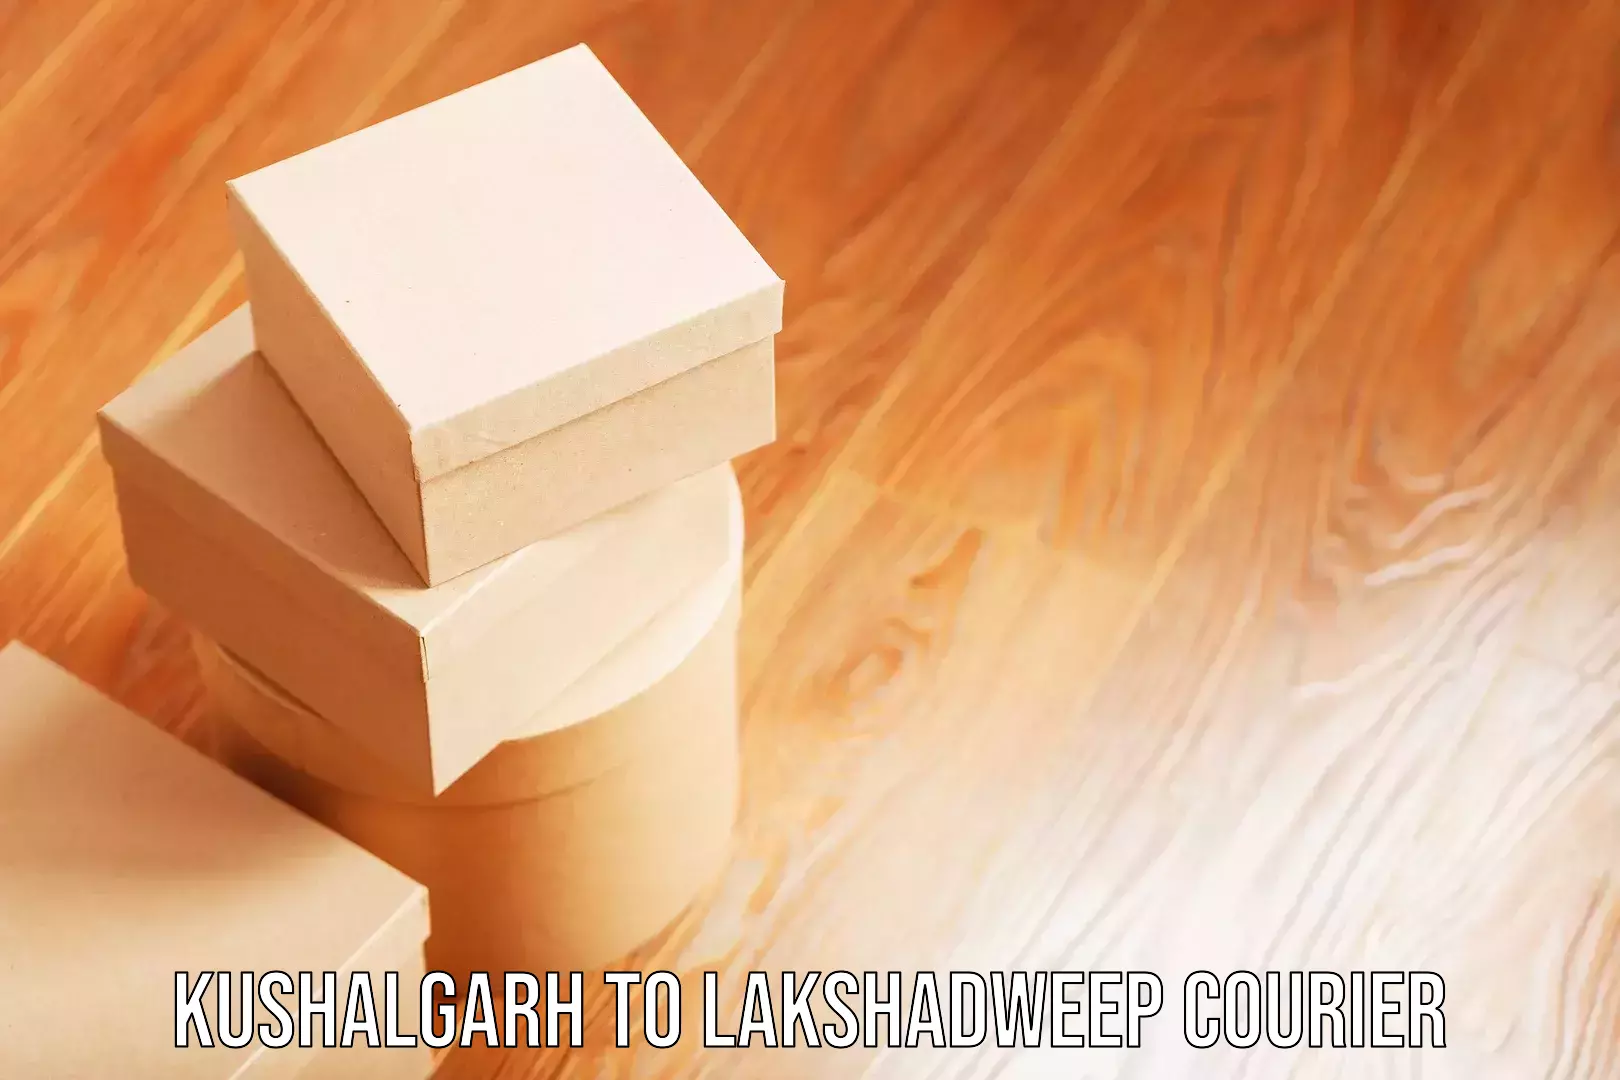 Luggage transport service Kushalgarh to Lakshadweep